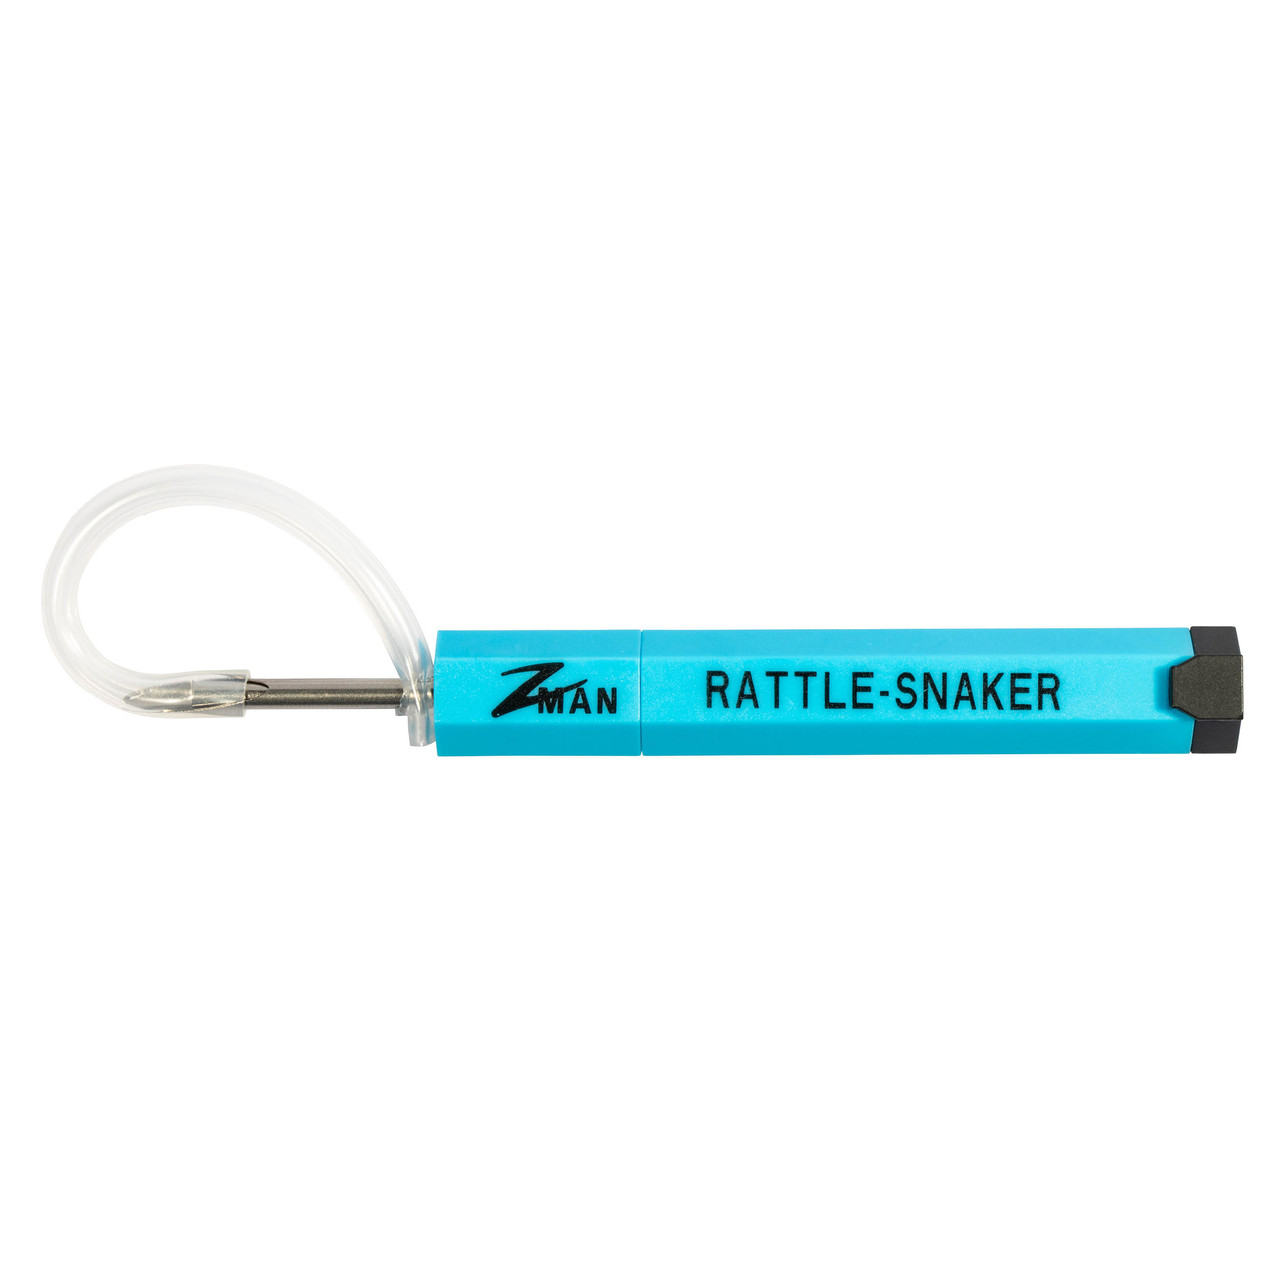 Z-Man Rattler-Snaker Kit - Tool & 10 Pack Rattles